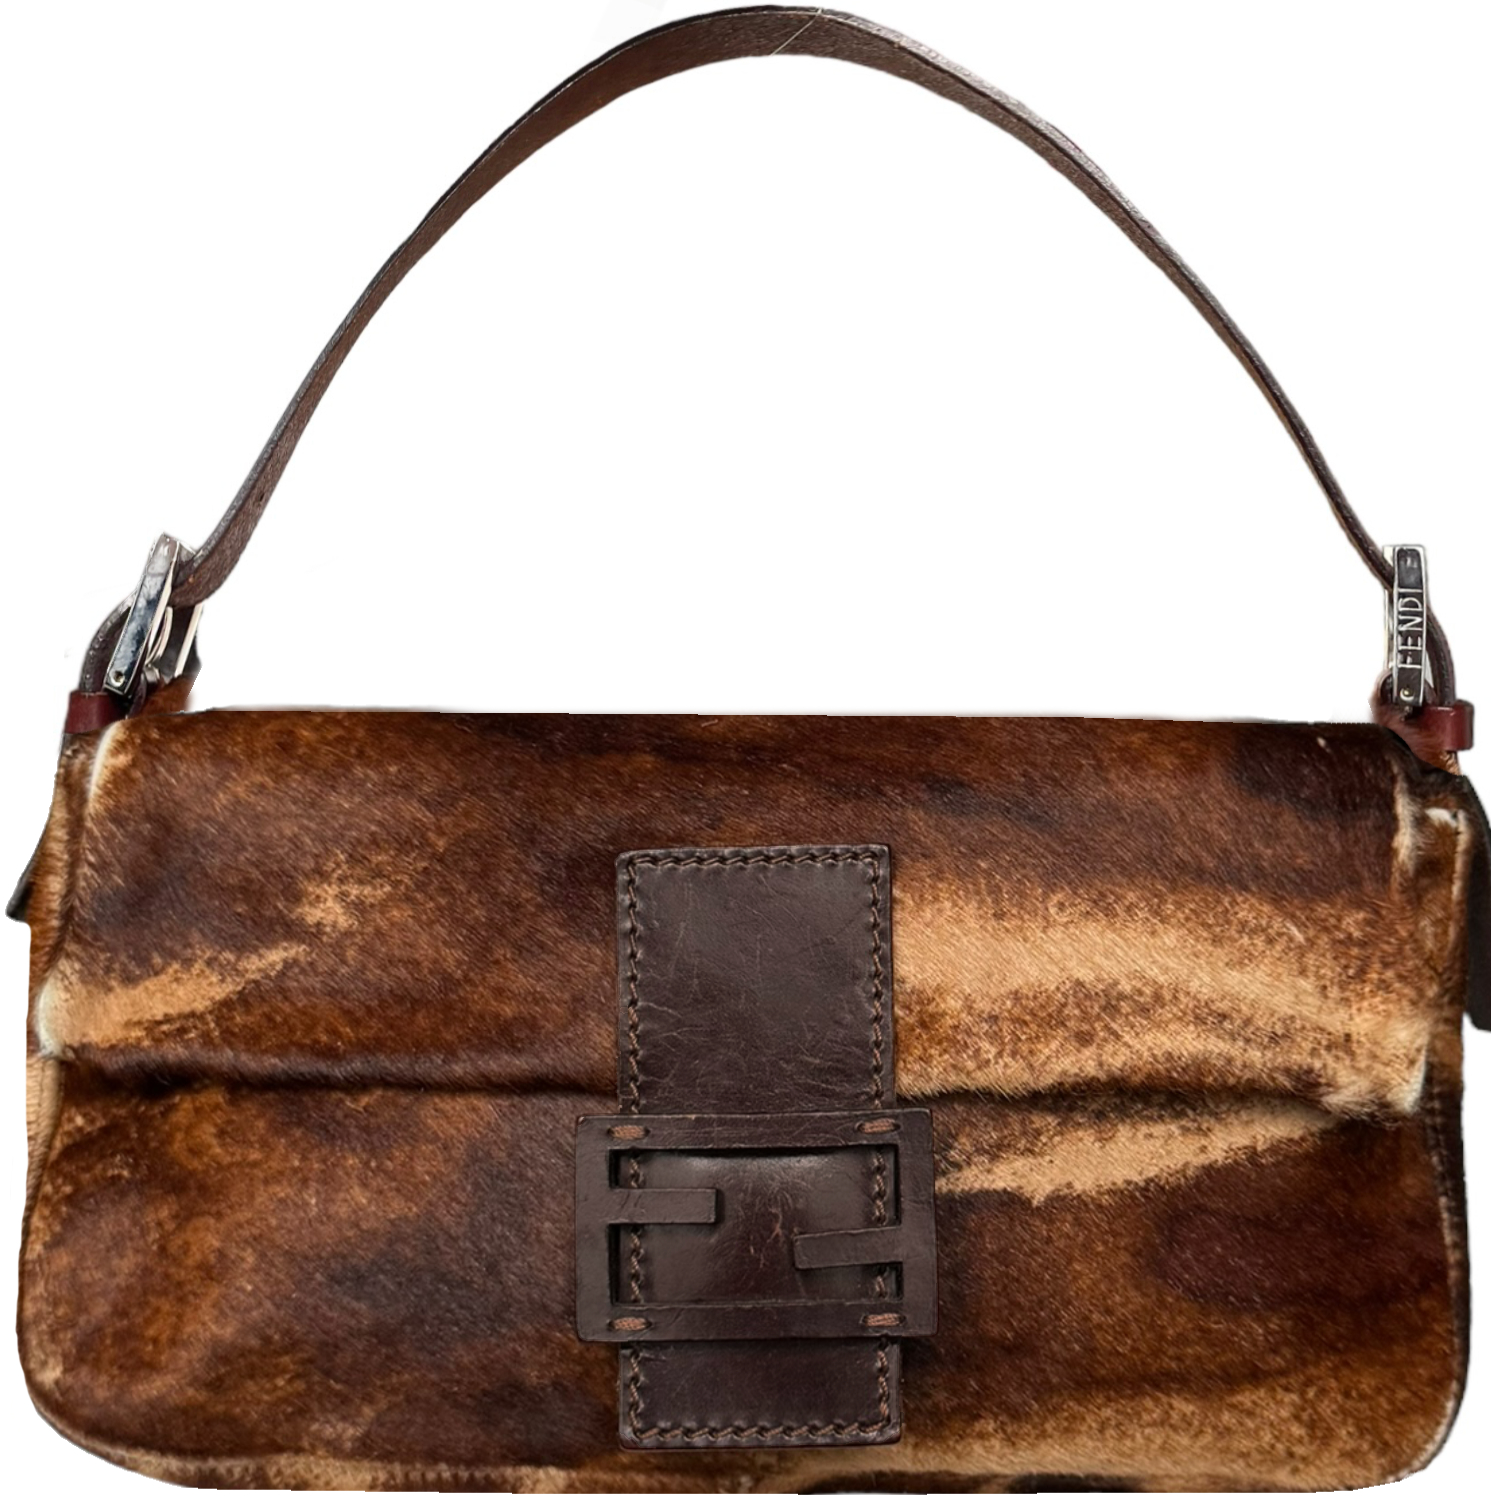 Vintage Fendi Mottled Calfskin Shoulder Baguette Bag in Brown / Tan | NITRYL